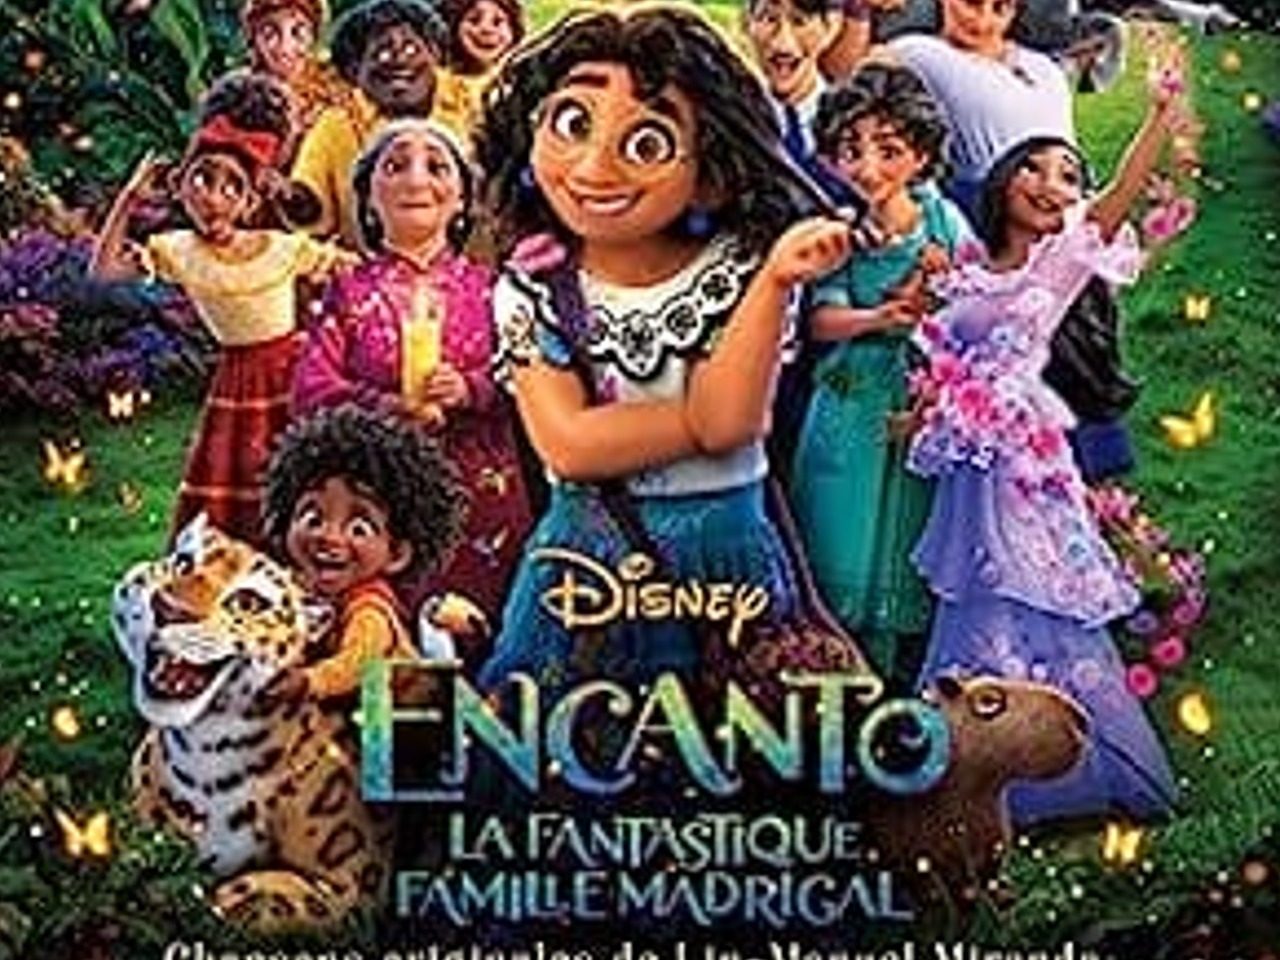 Affiche du film Encanto de Disney